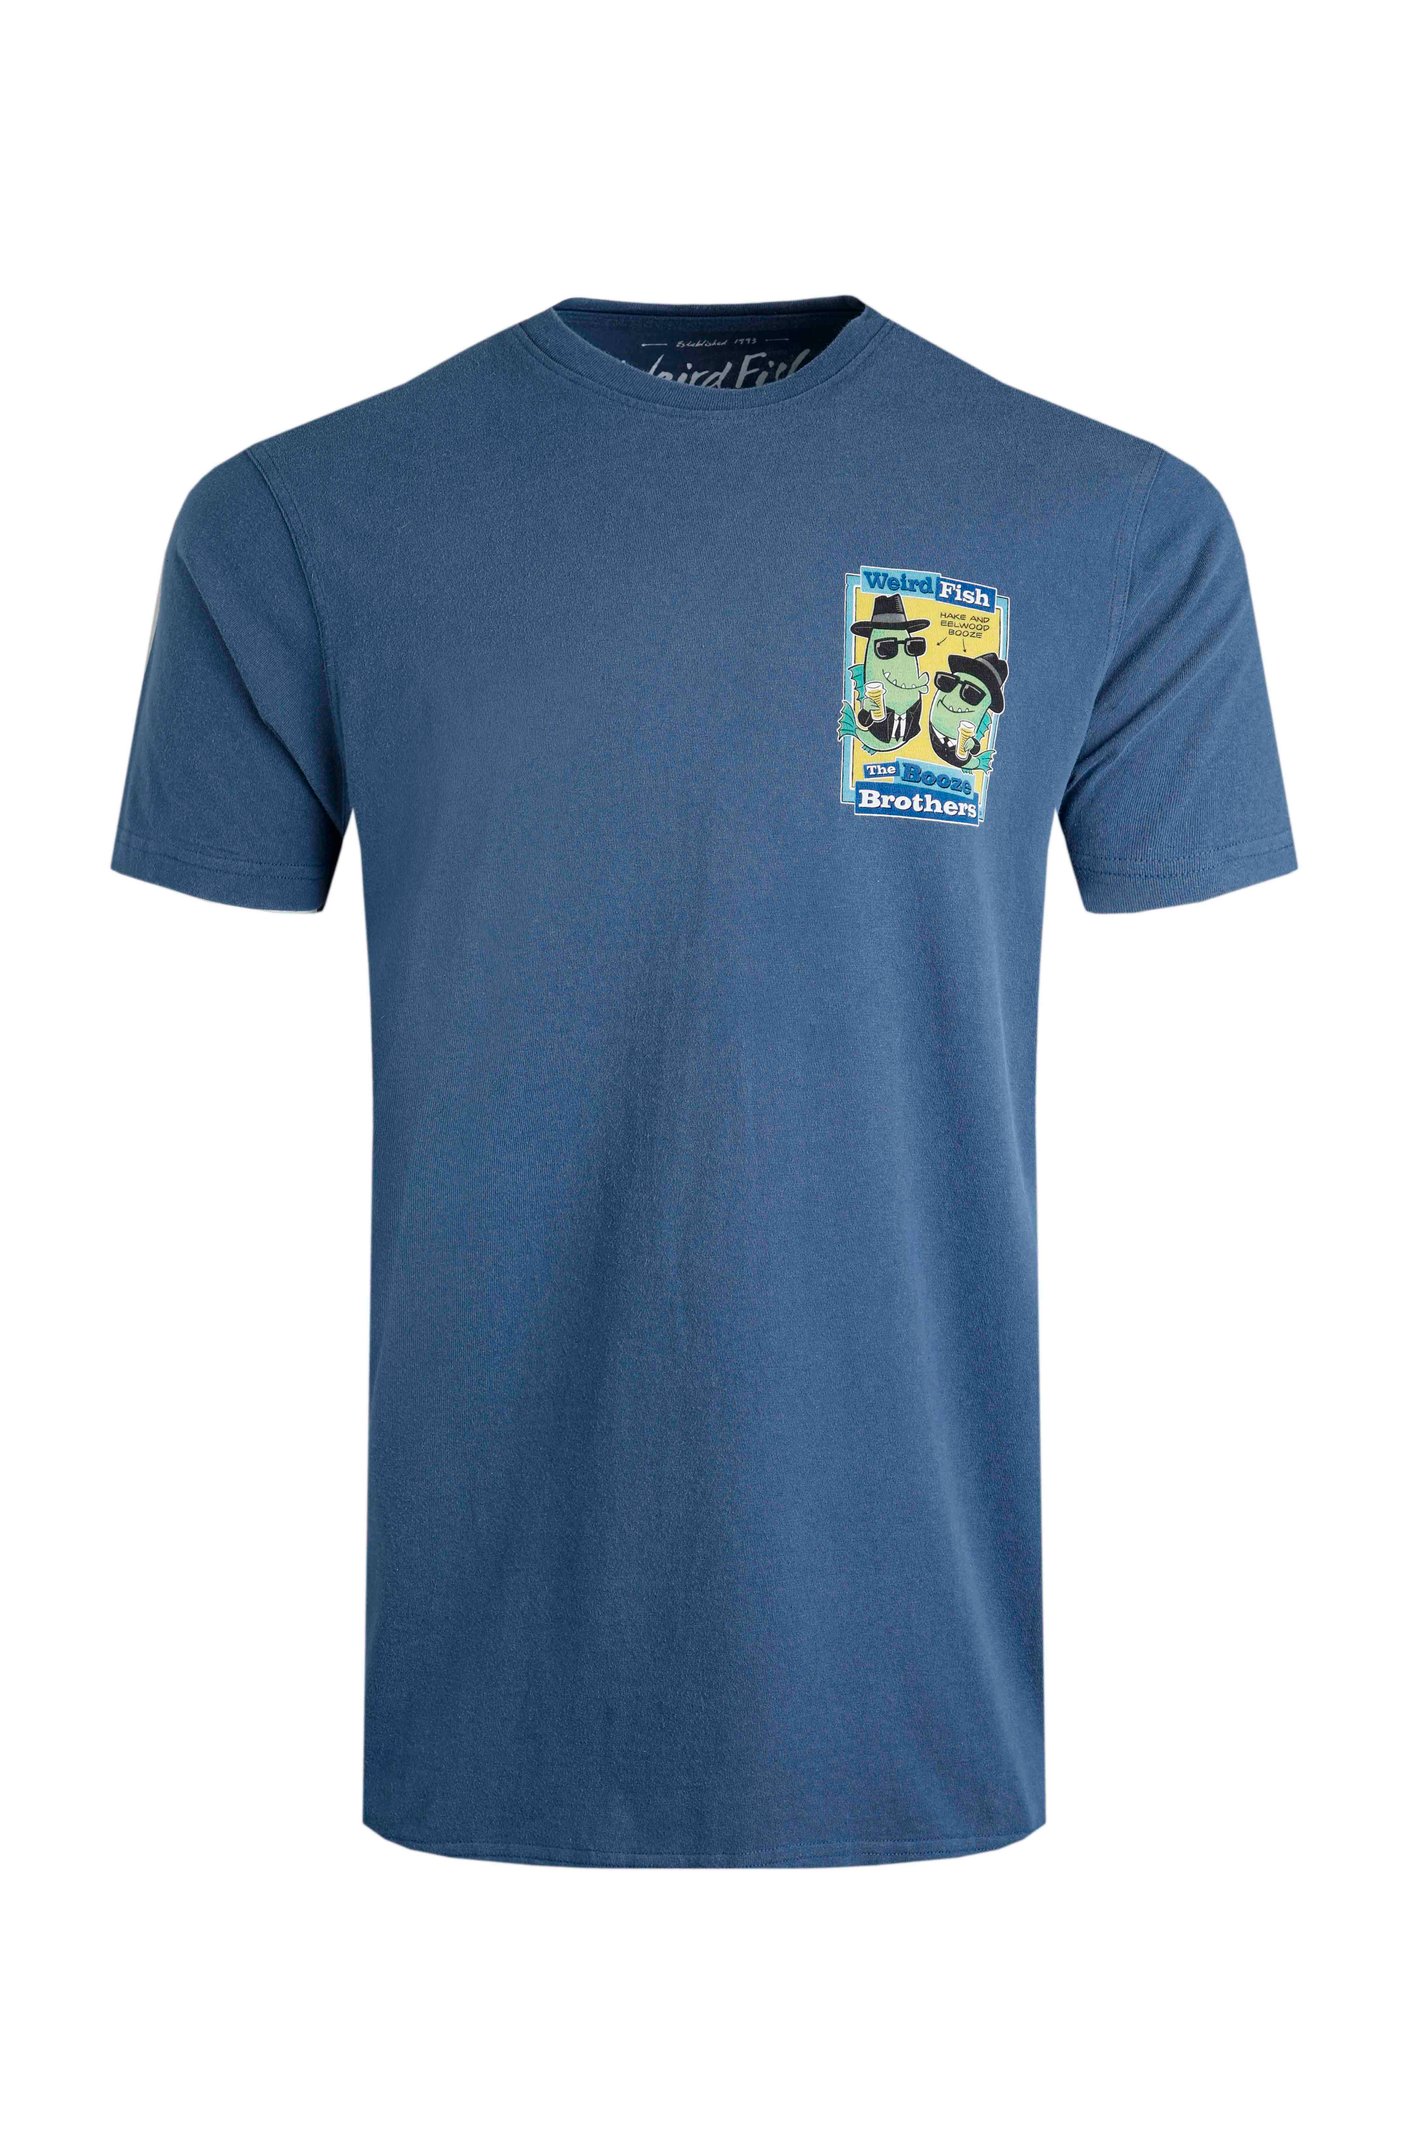 Weird Fish Booze Brothers Artist T-Shirt Ensign Blue Size 3XL